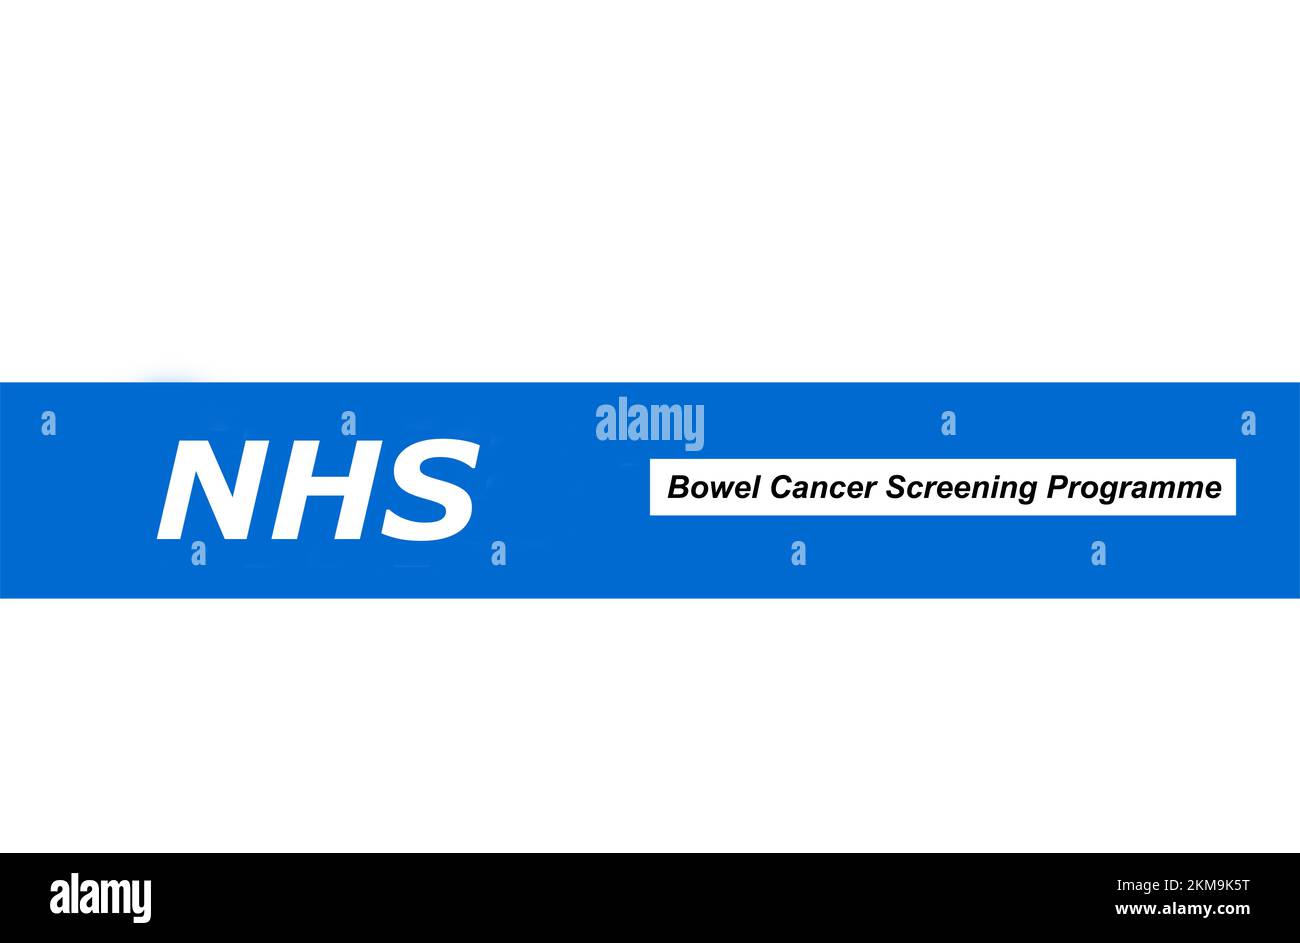 NHS-Zeichen und -Wortlaut aus der Karton für Darmkrebs-Tests. Stockfoto